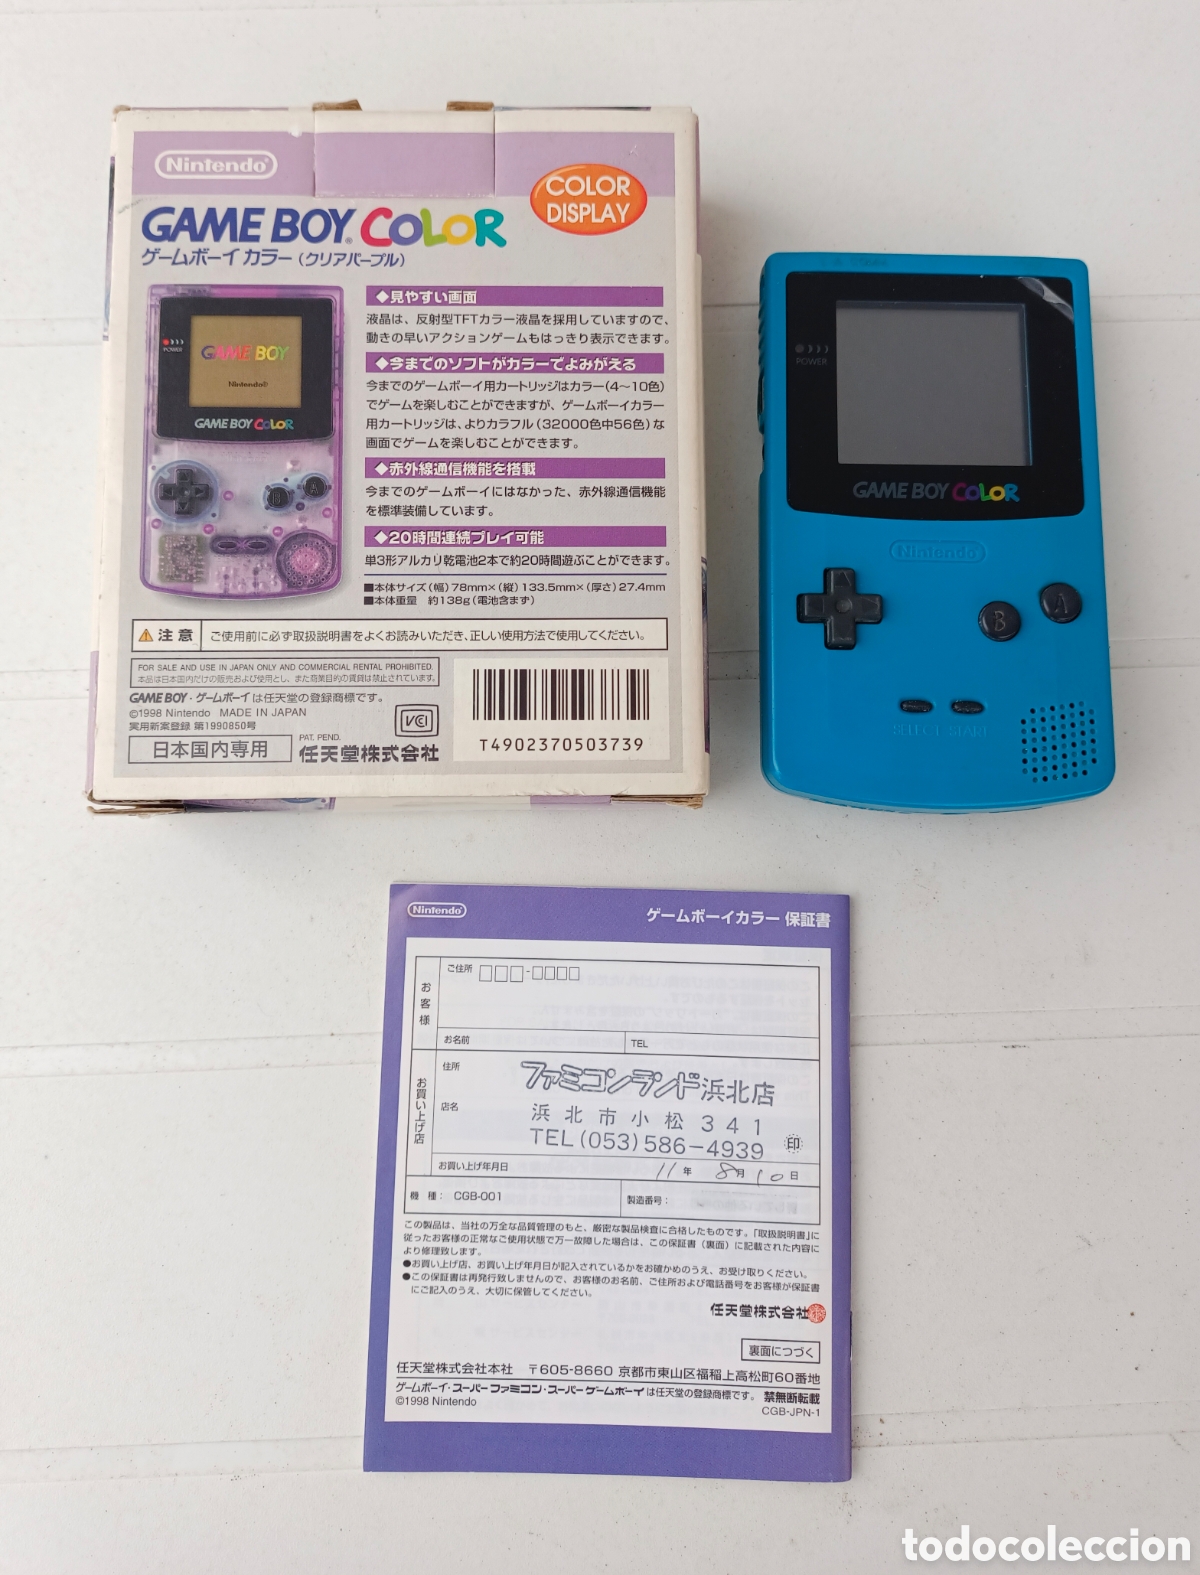 Protector para Game Boy® Color (Caja Consola) Nintendo®